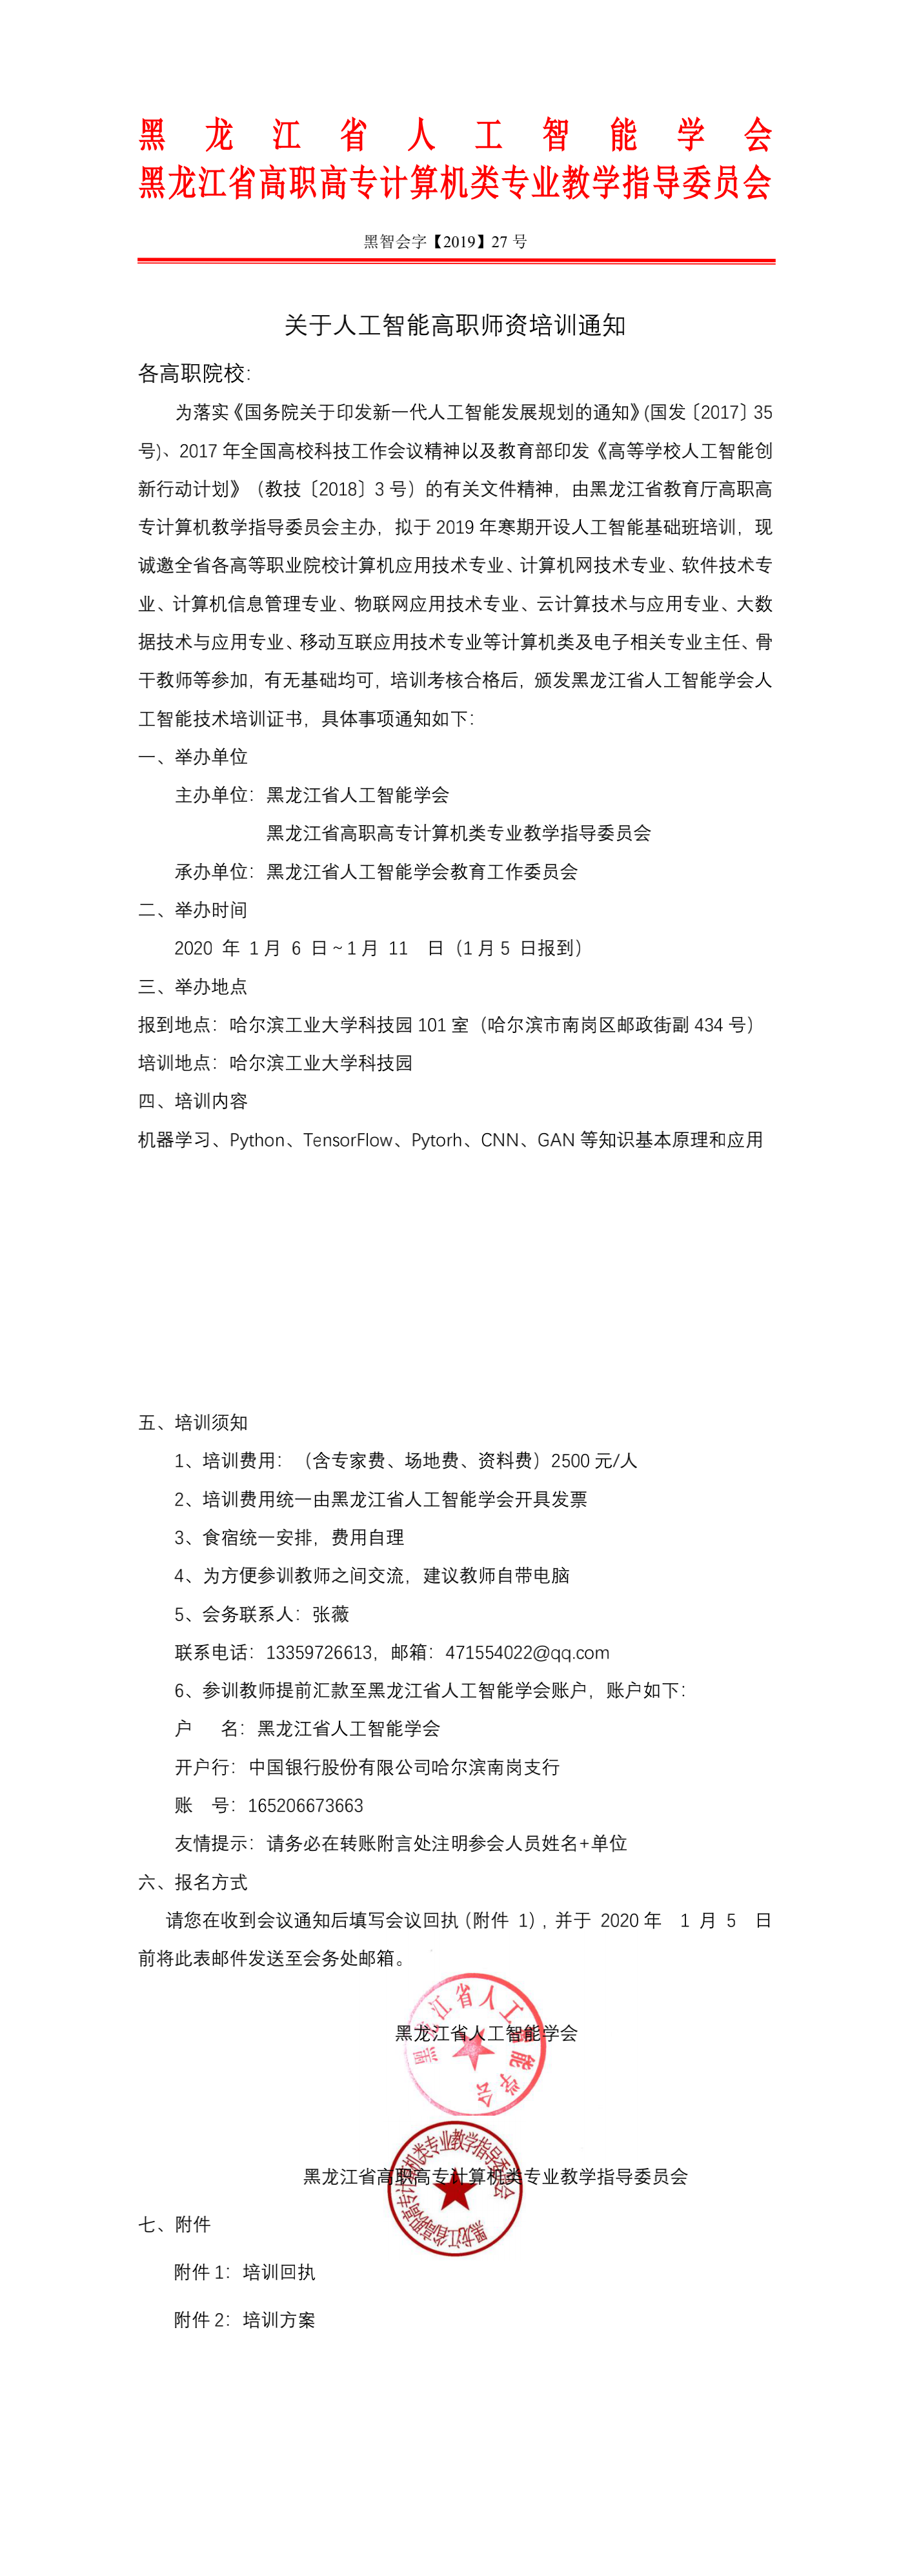 6_1_黑龙江省人工智能学会高职培训通知修改版 (20191123)_1-2_0.png